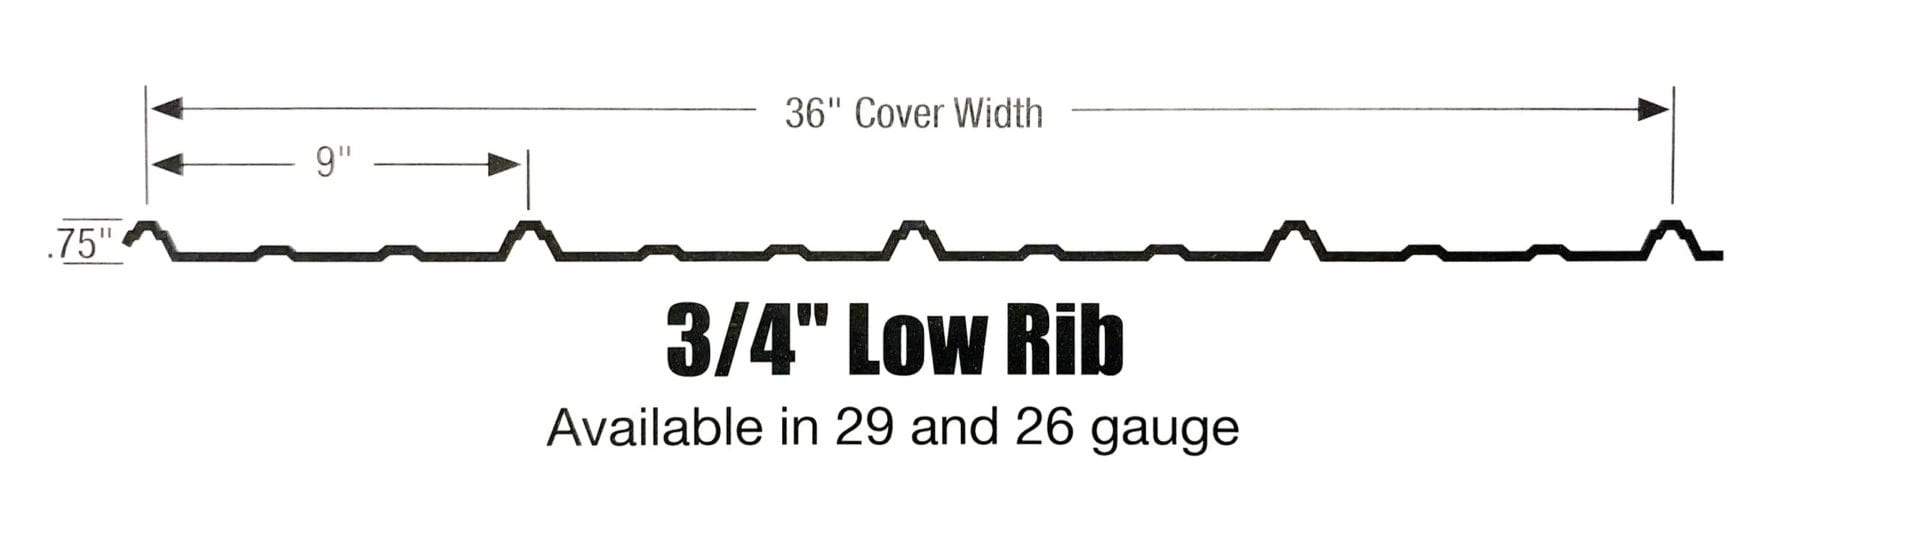 3/4" Low Rib